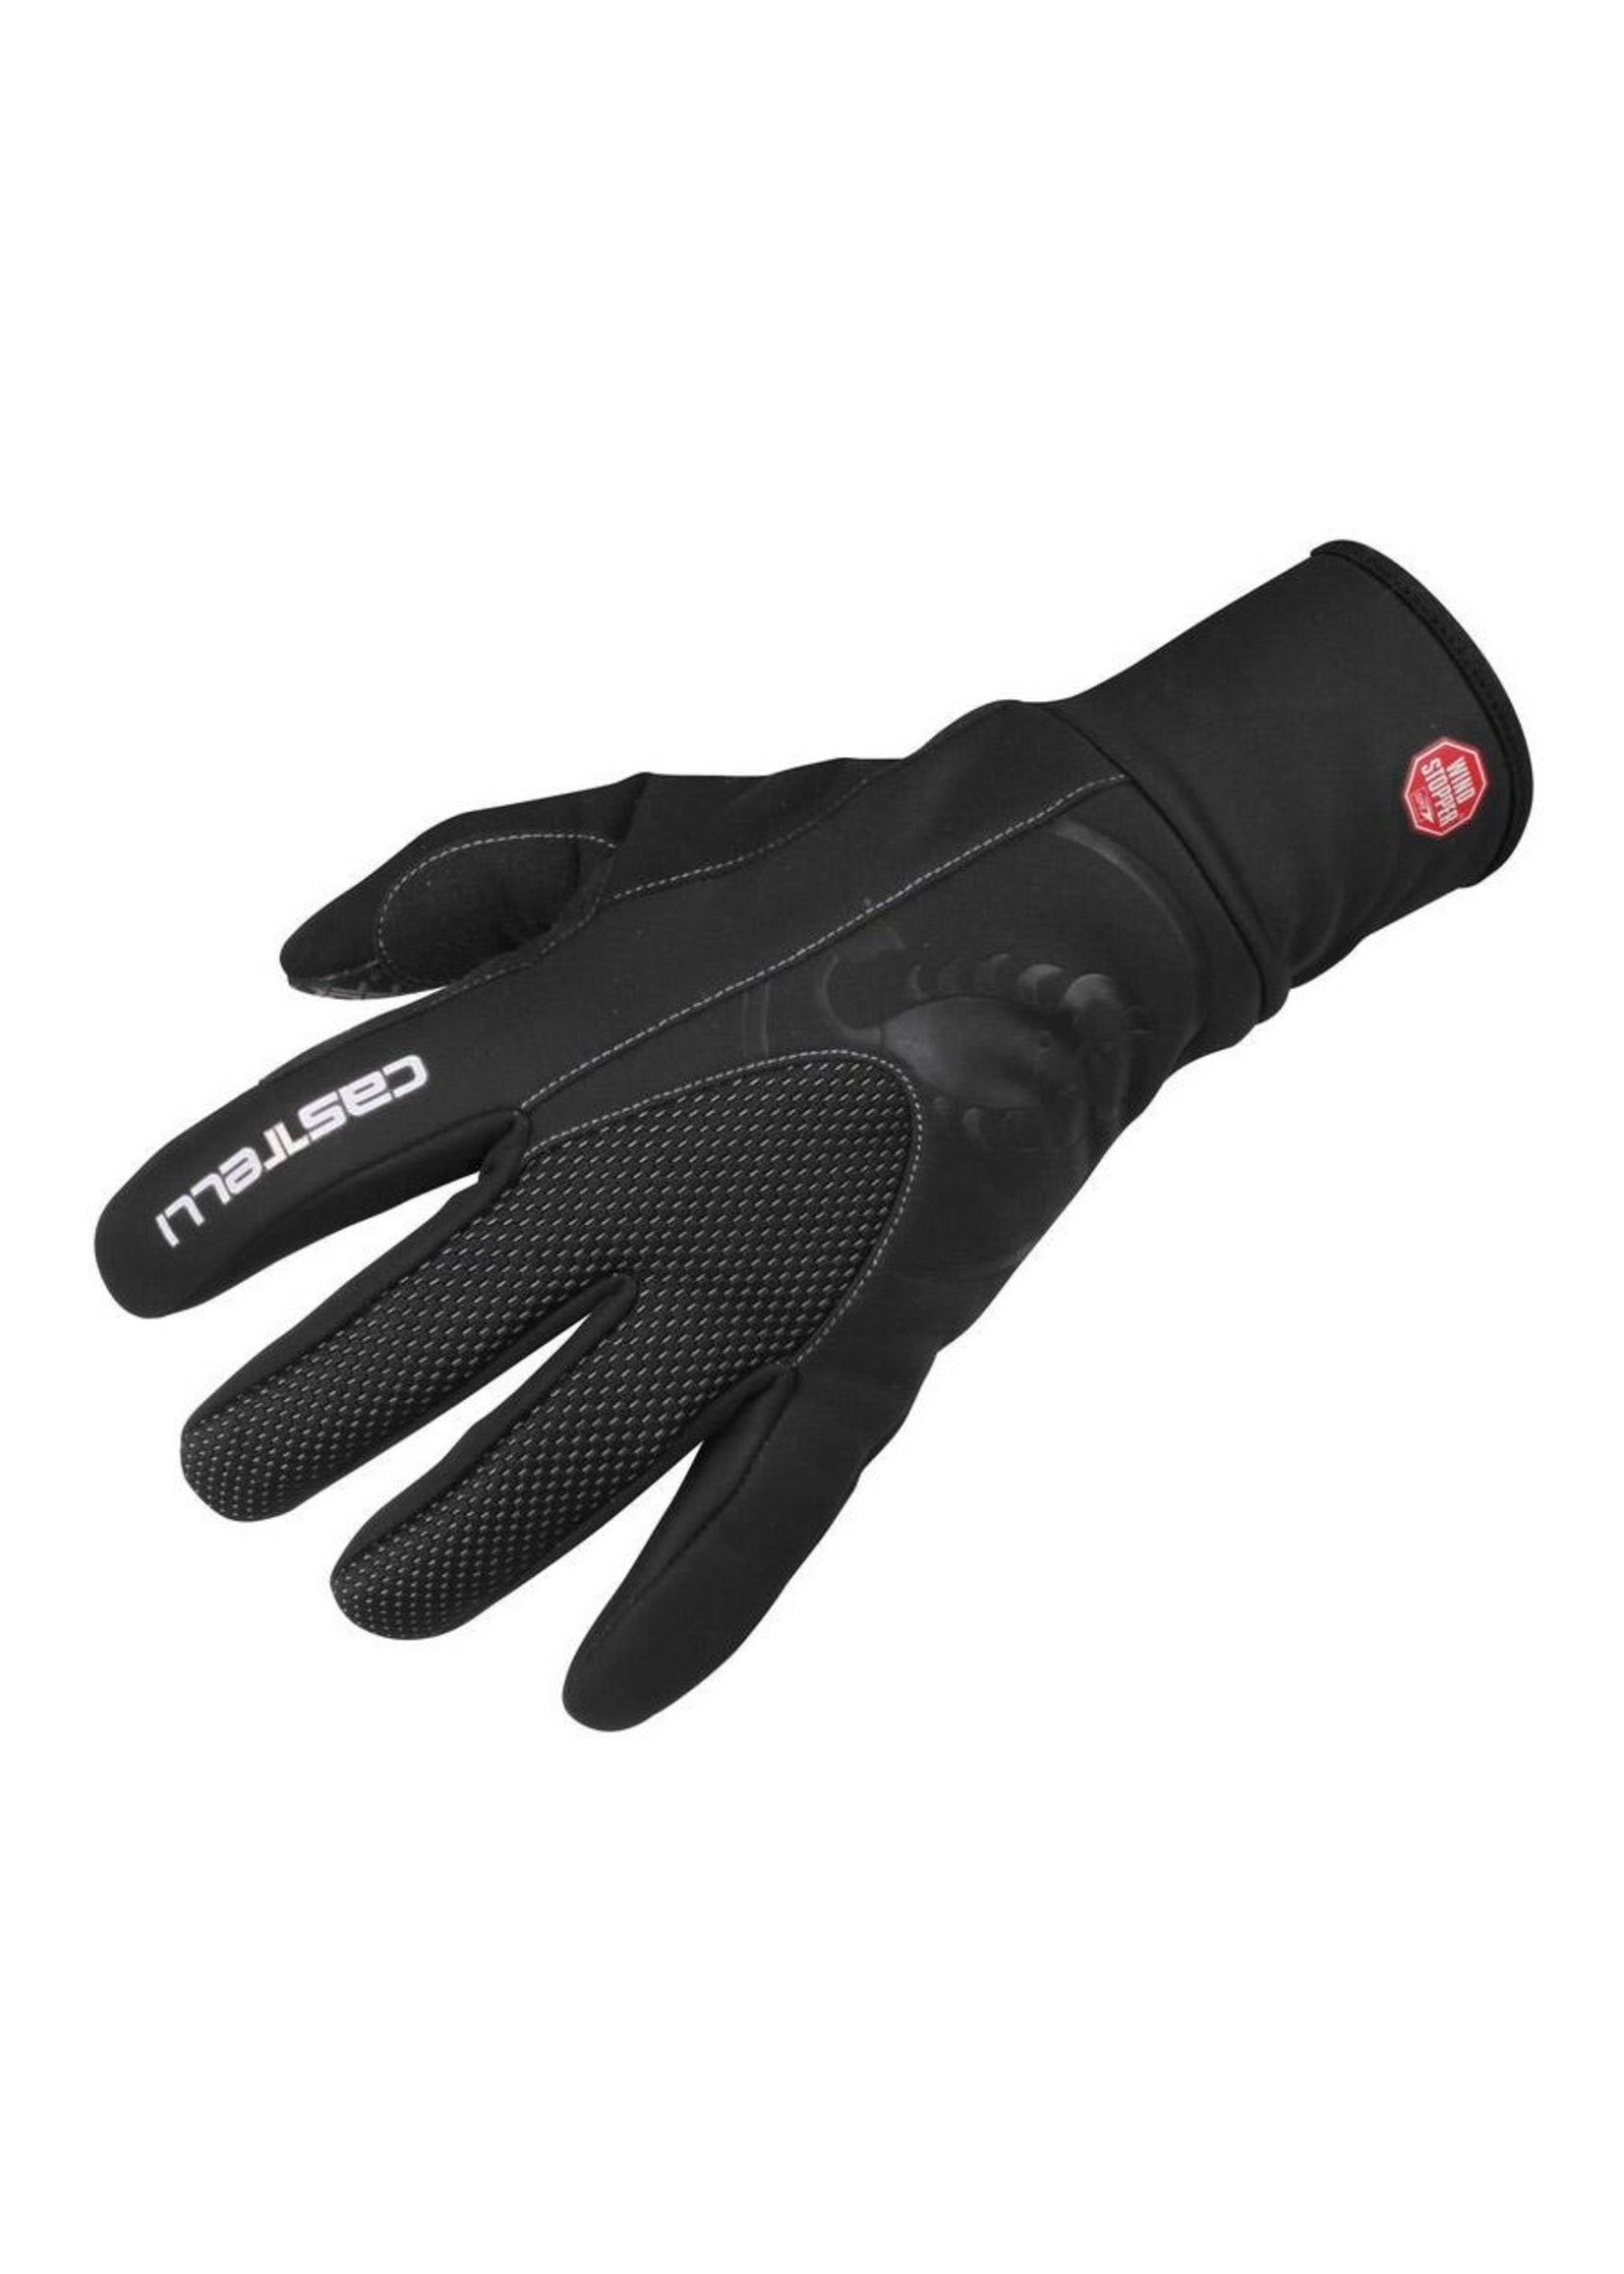 Castelli Estremo Glove -black -S